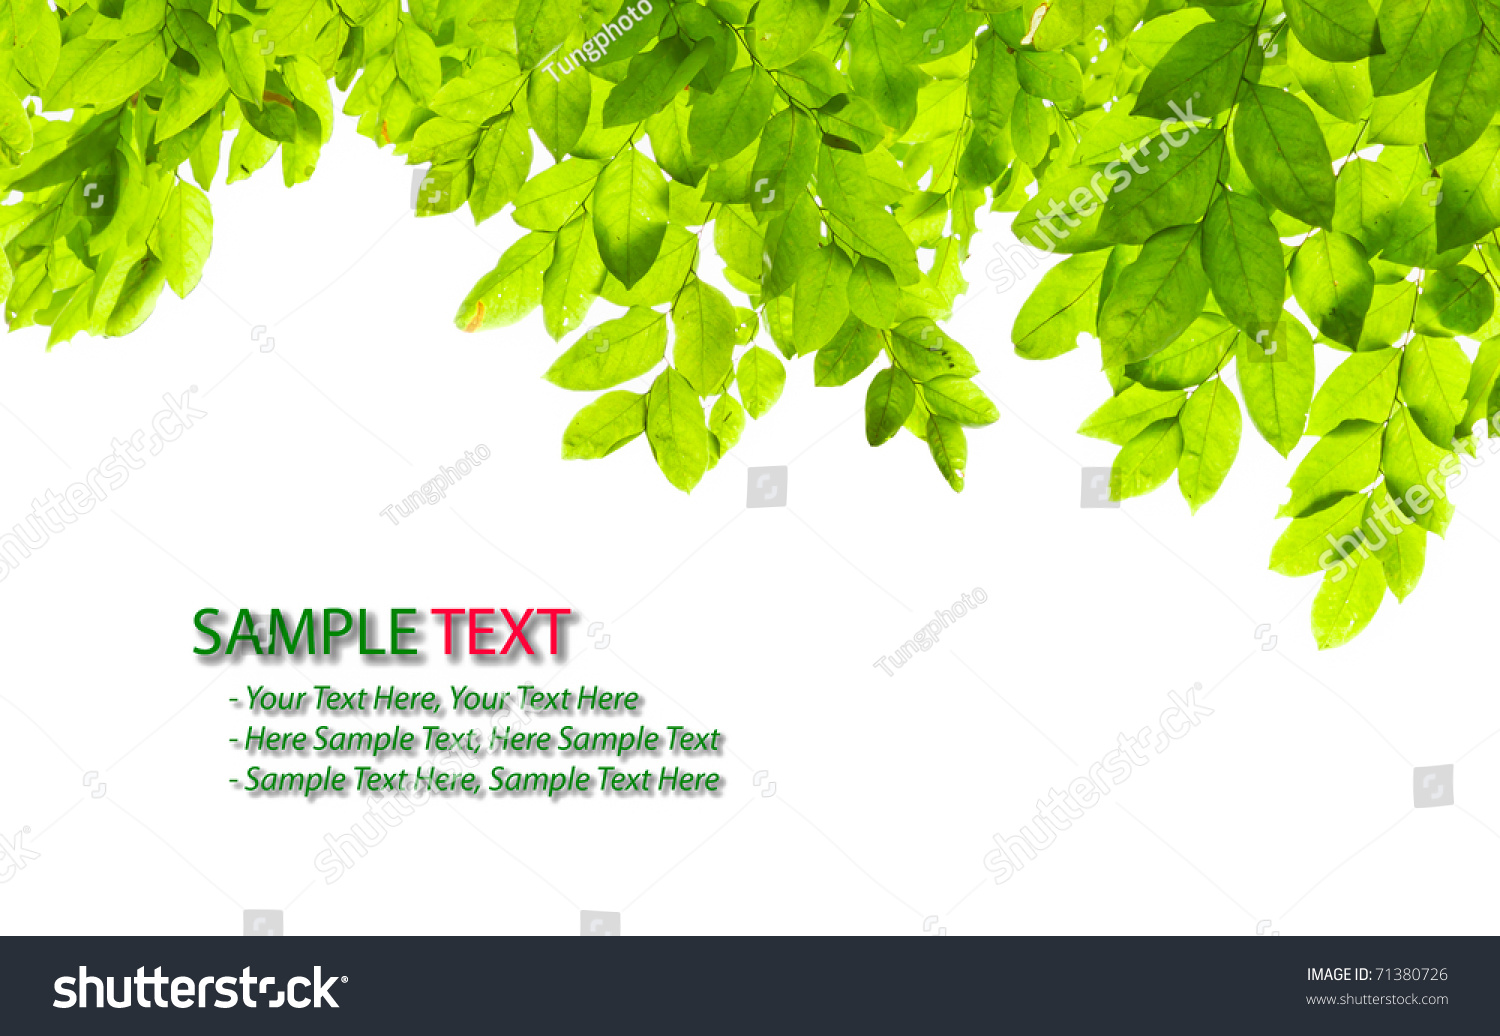 green leaf background png